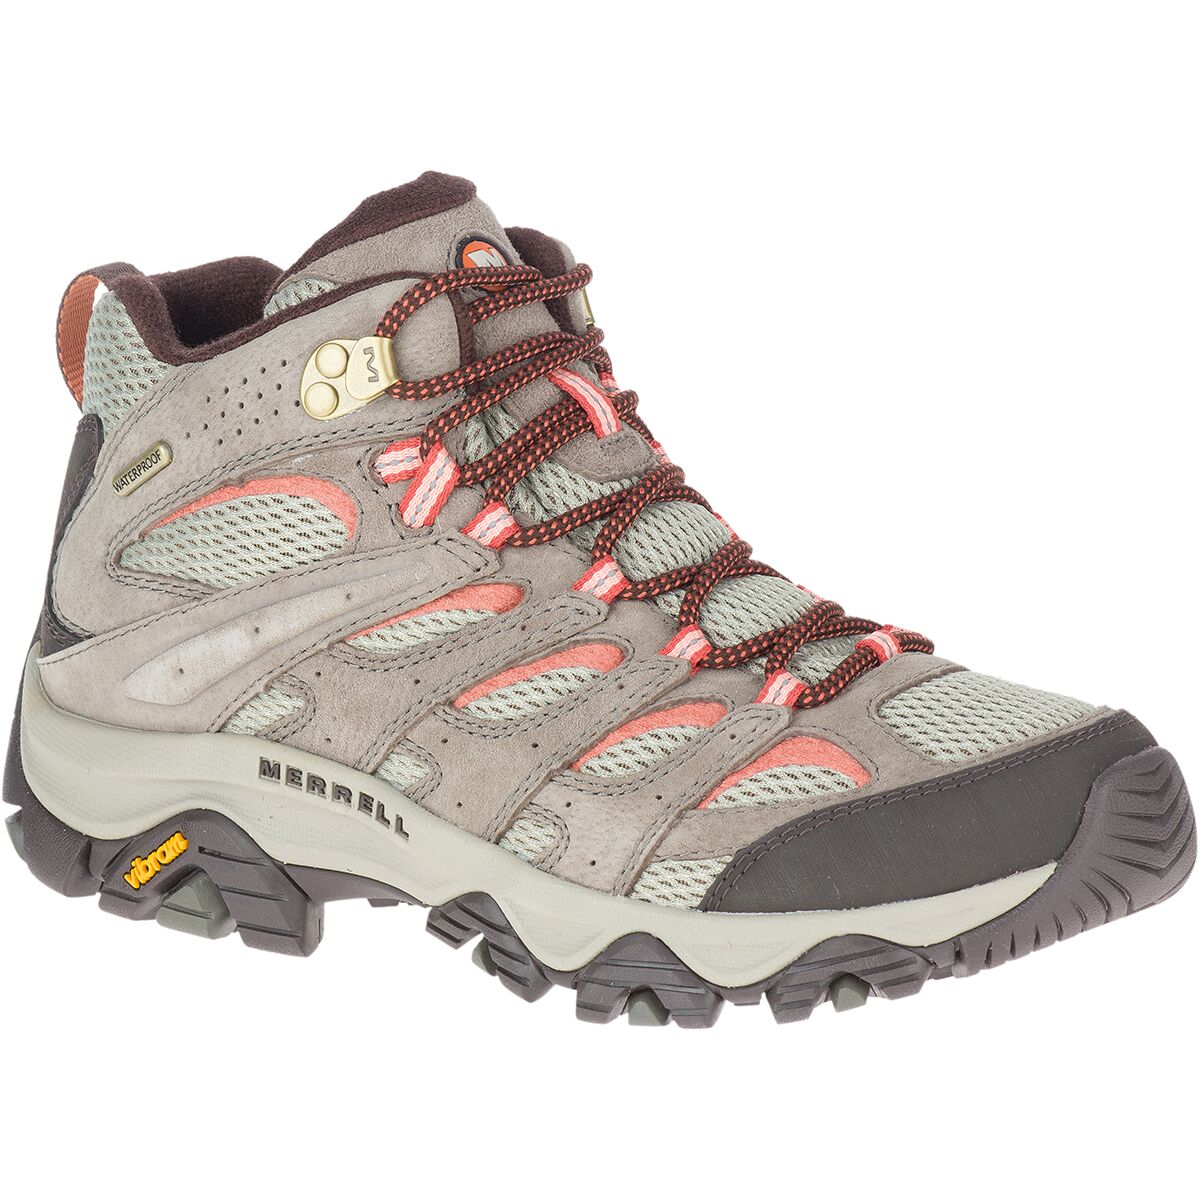 Moab 3 Mid Waterproof Hiking - Women's Footwear